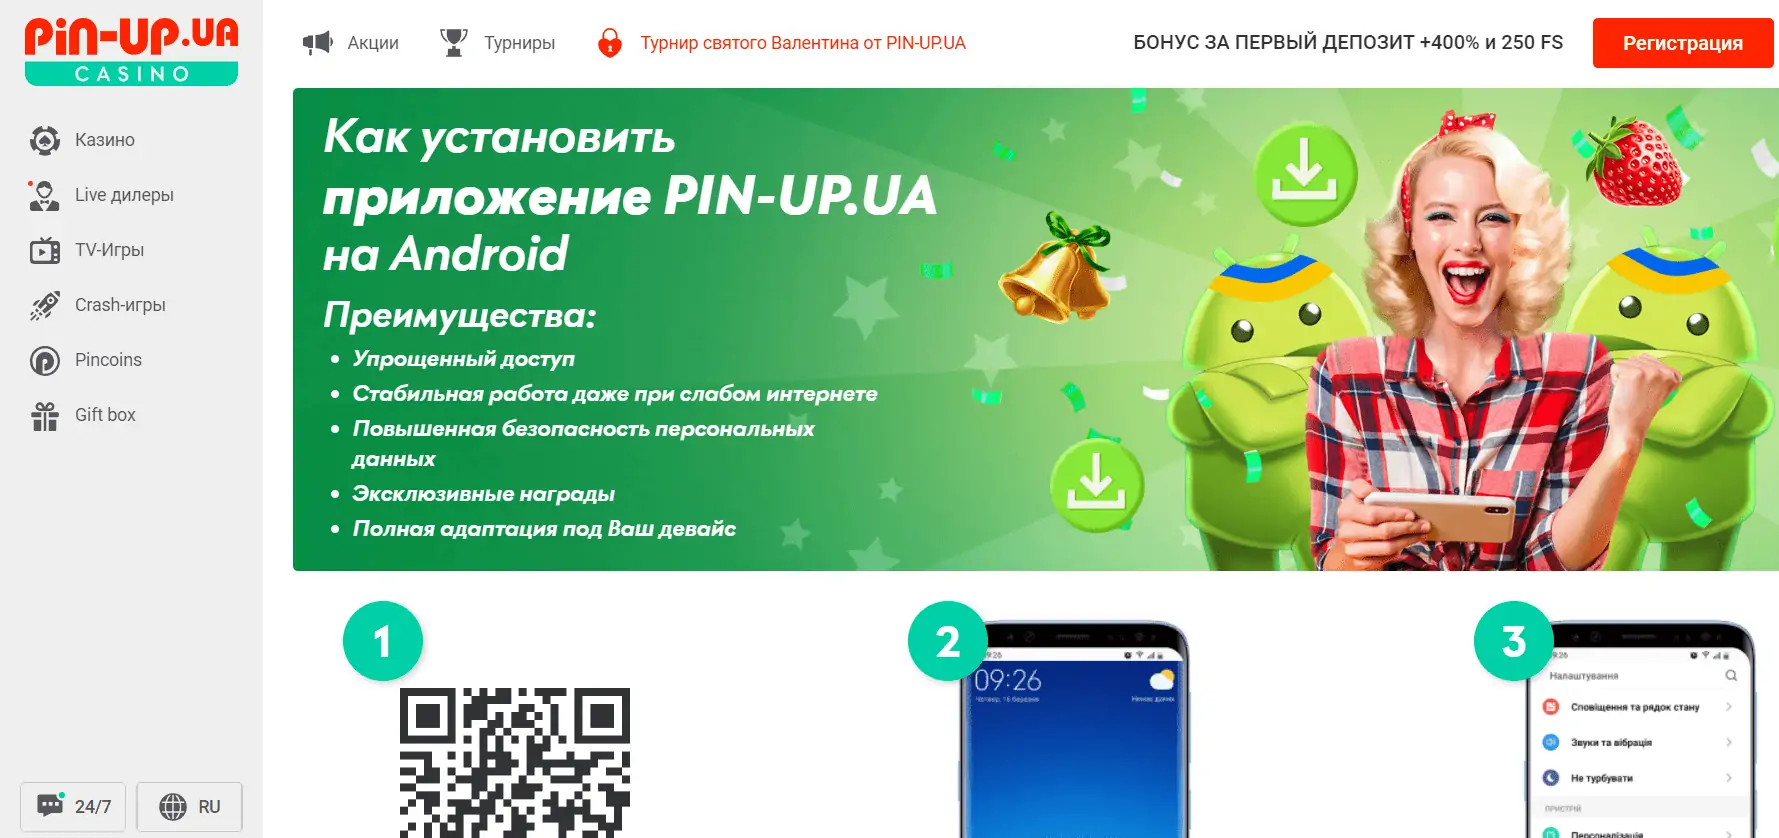 Pin-Up (Пин Ап) казино онлайн Украина - игровые автоматы, слоты, регистрация, вход